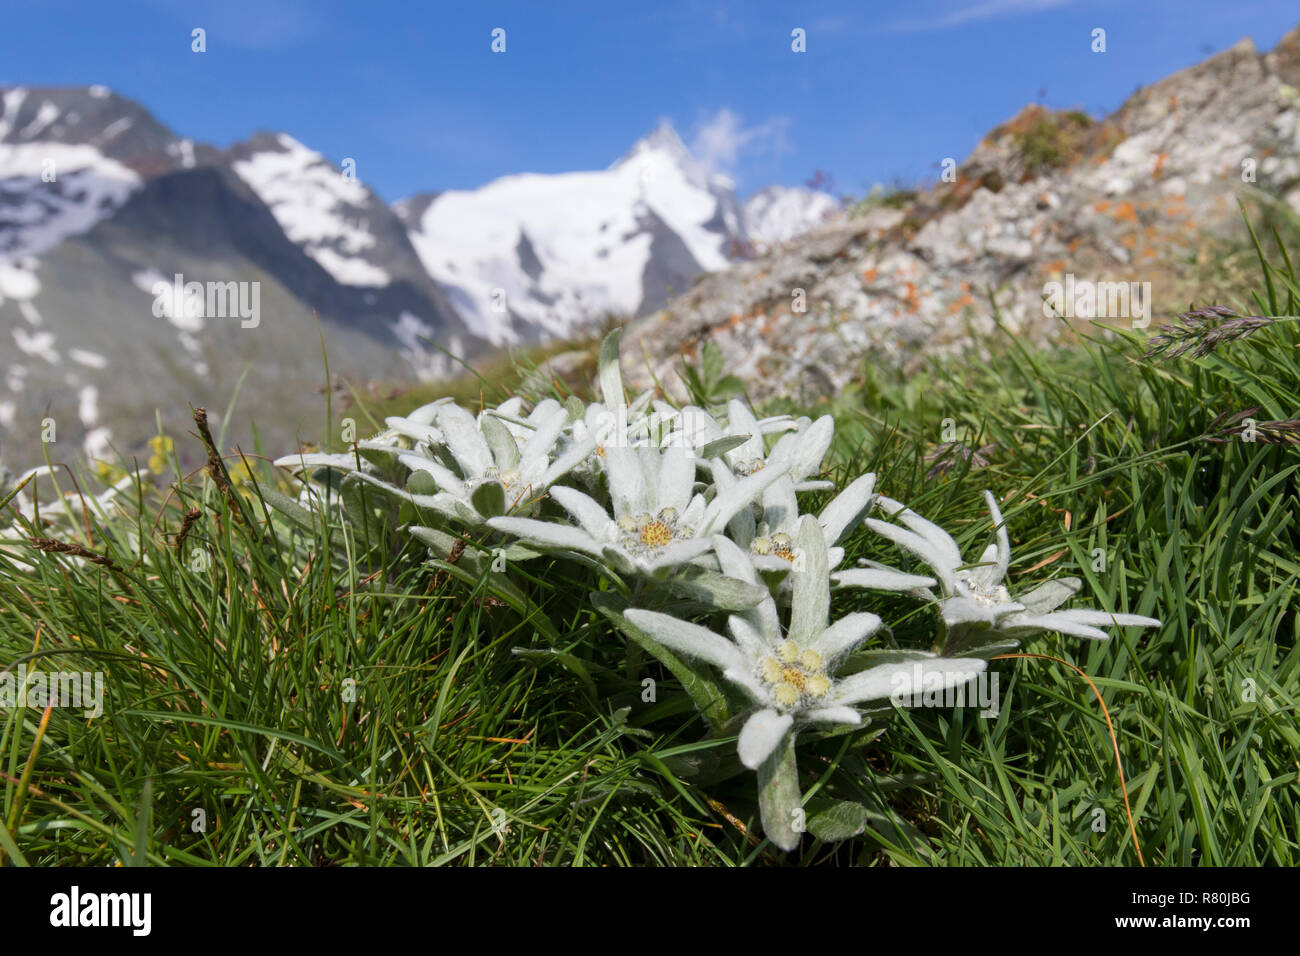 Edelweiss (Leontopodium nivale alpinum), plante à fleurs avec la montagne en arrière-plan du Grossglockner, plus haut sommet d'Autriche. Le Parc National du Hohe Tauern, Carinthie, Autriche Banque D'Images